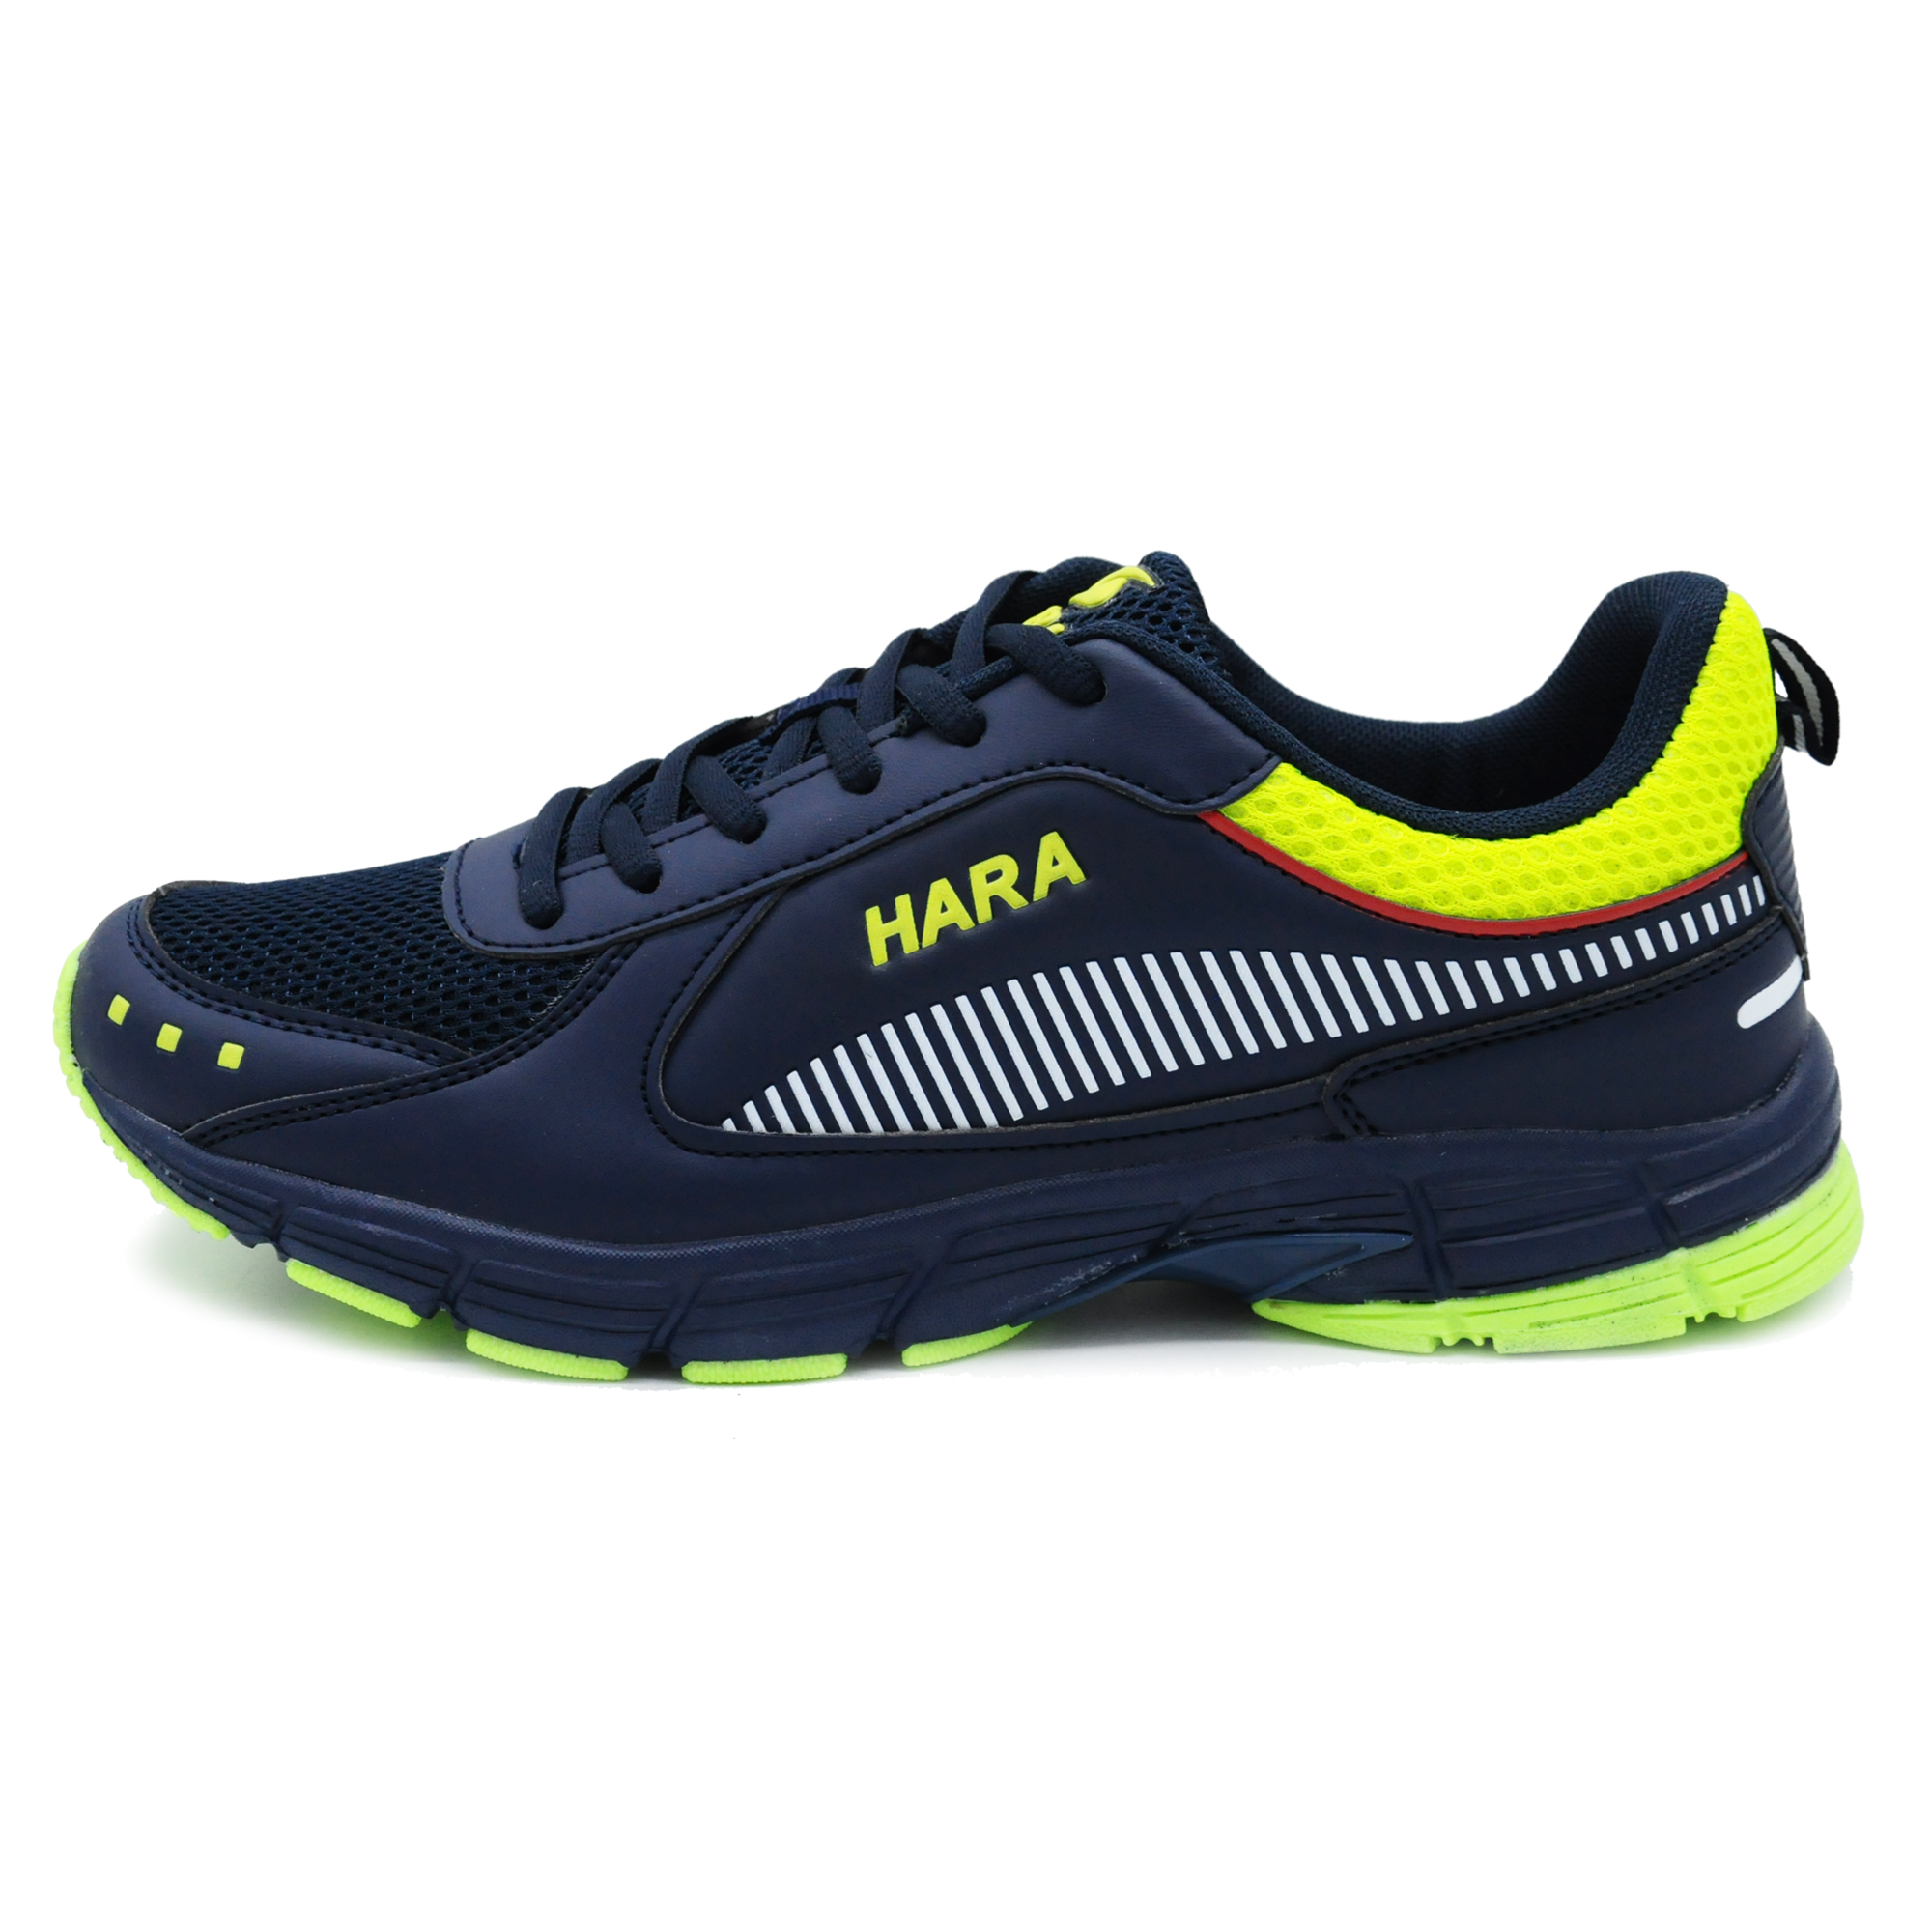 HARA Sports รองเท้าวิ่งพื้นนุ่ม รองเท้าผ้าใบ ชาย/หญิง รุ่น J94 สีกรม